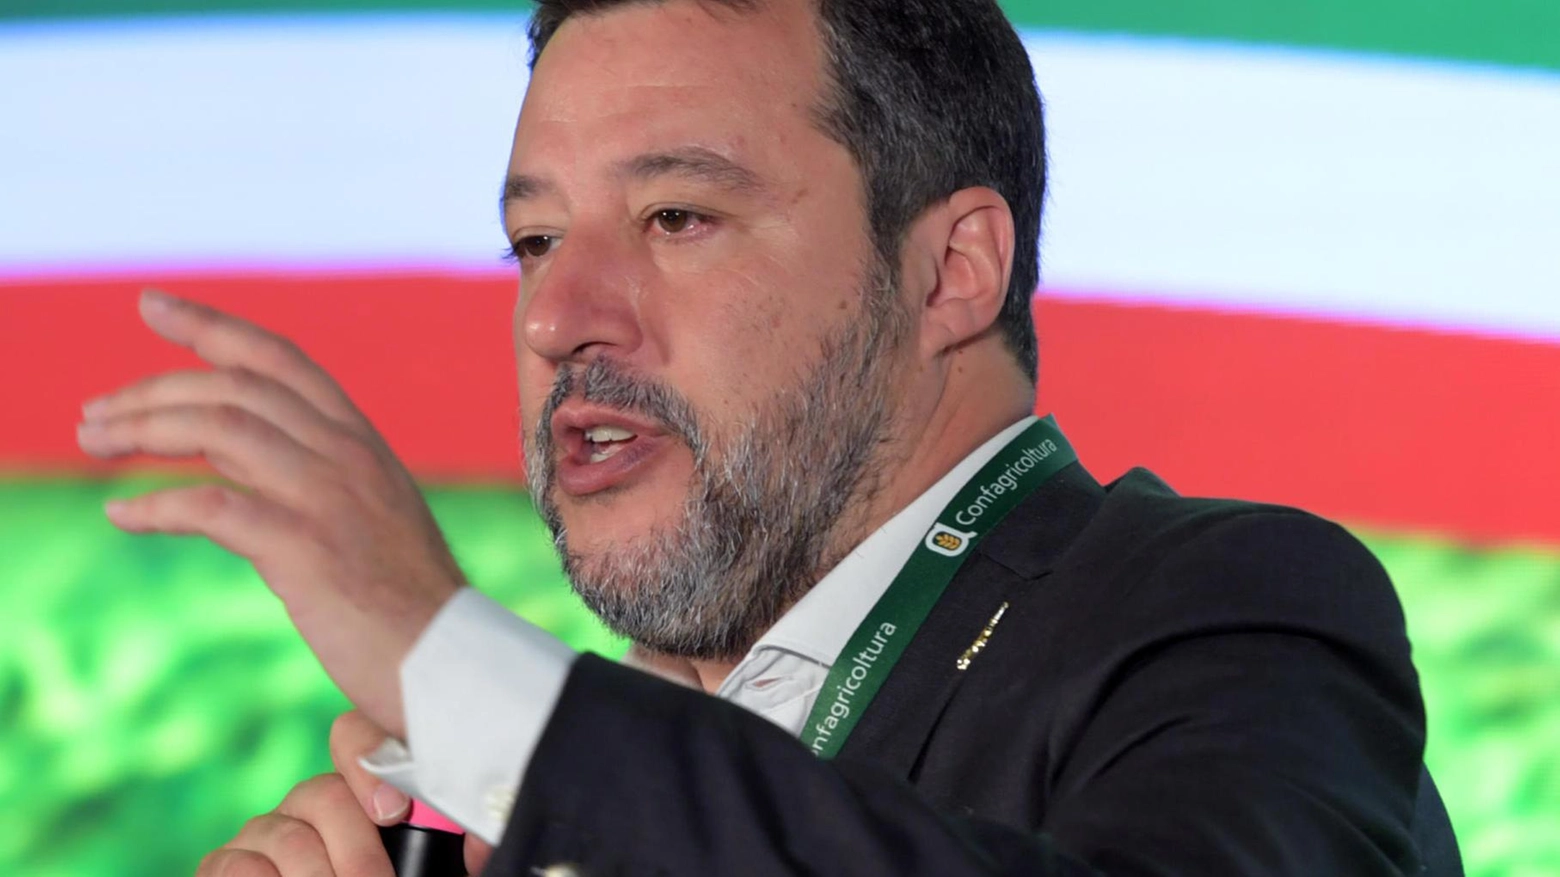 Agenzia delle Entrate  È scontro con Salvini  "Niente persecuzione,  nel mirino gli evasori"